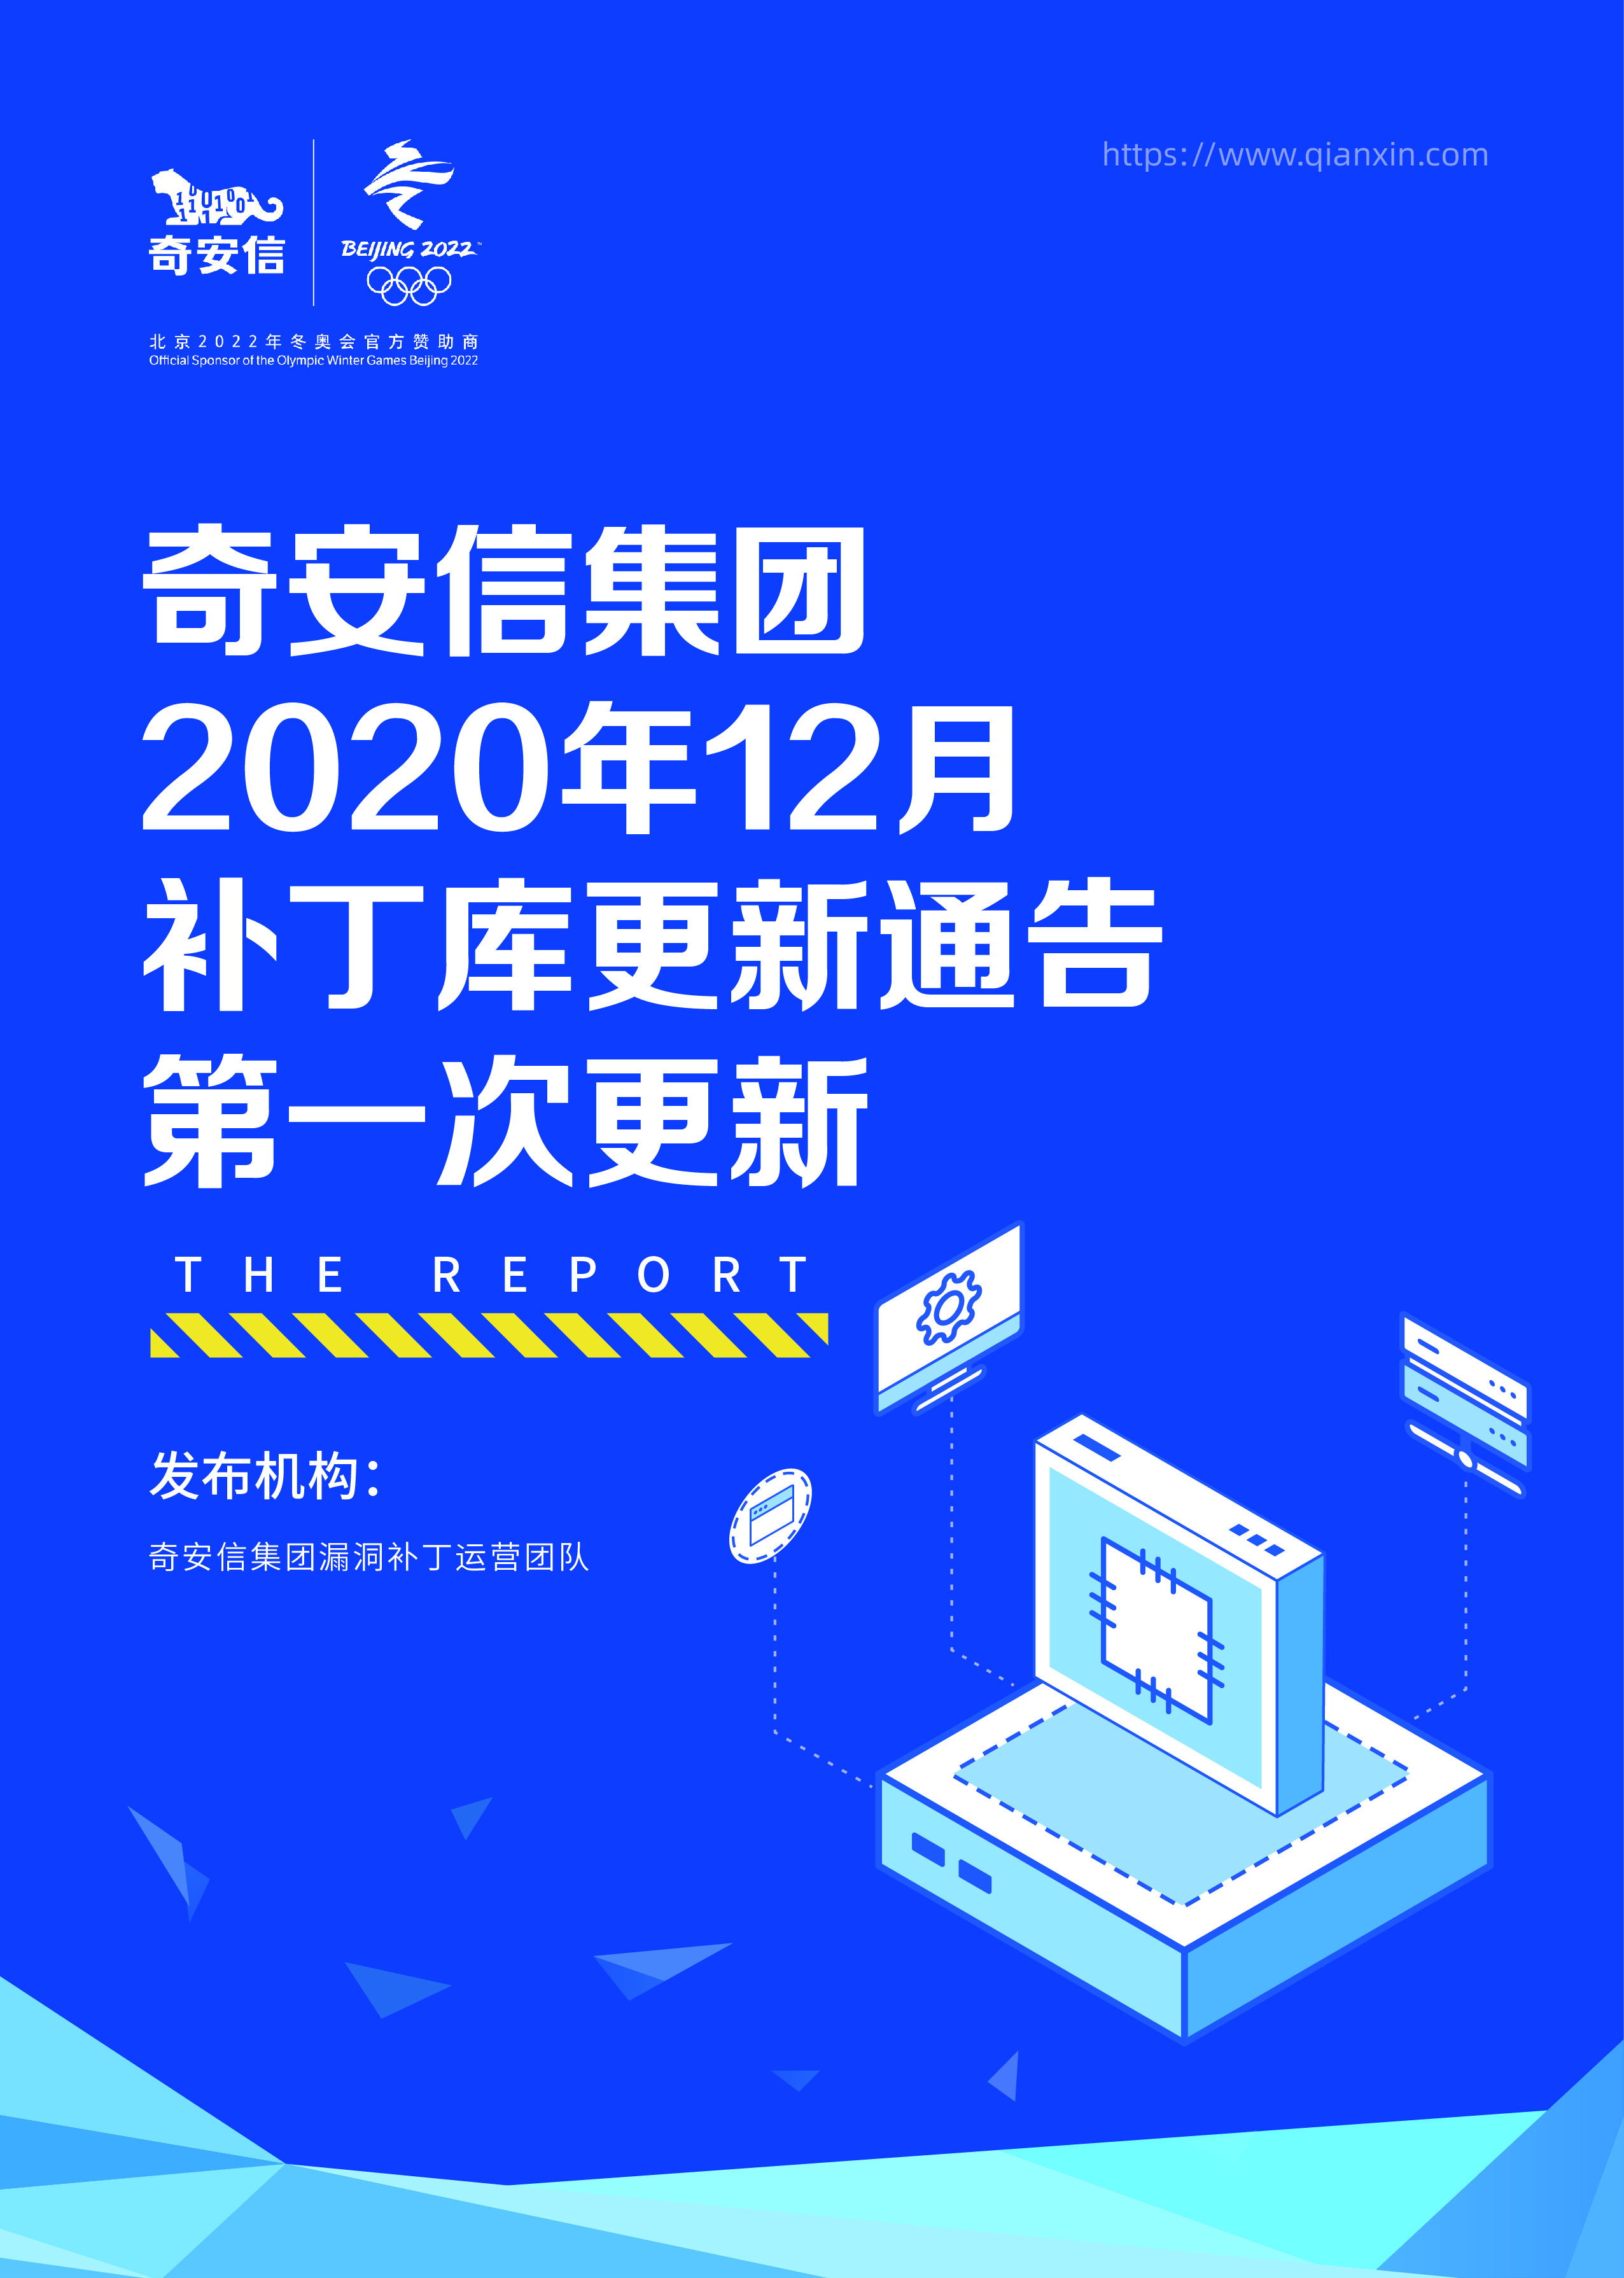 奇安信集团2020年12月补丁库更新通告第一次更新